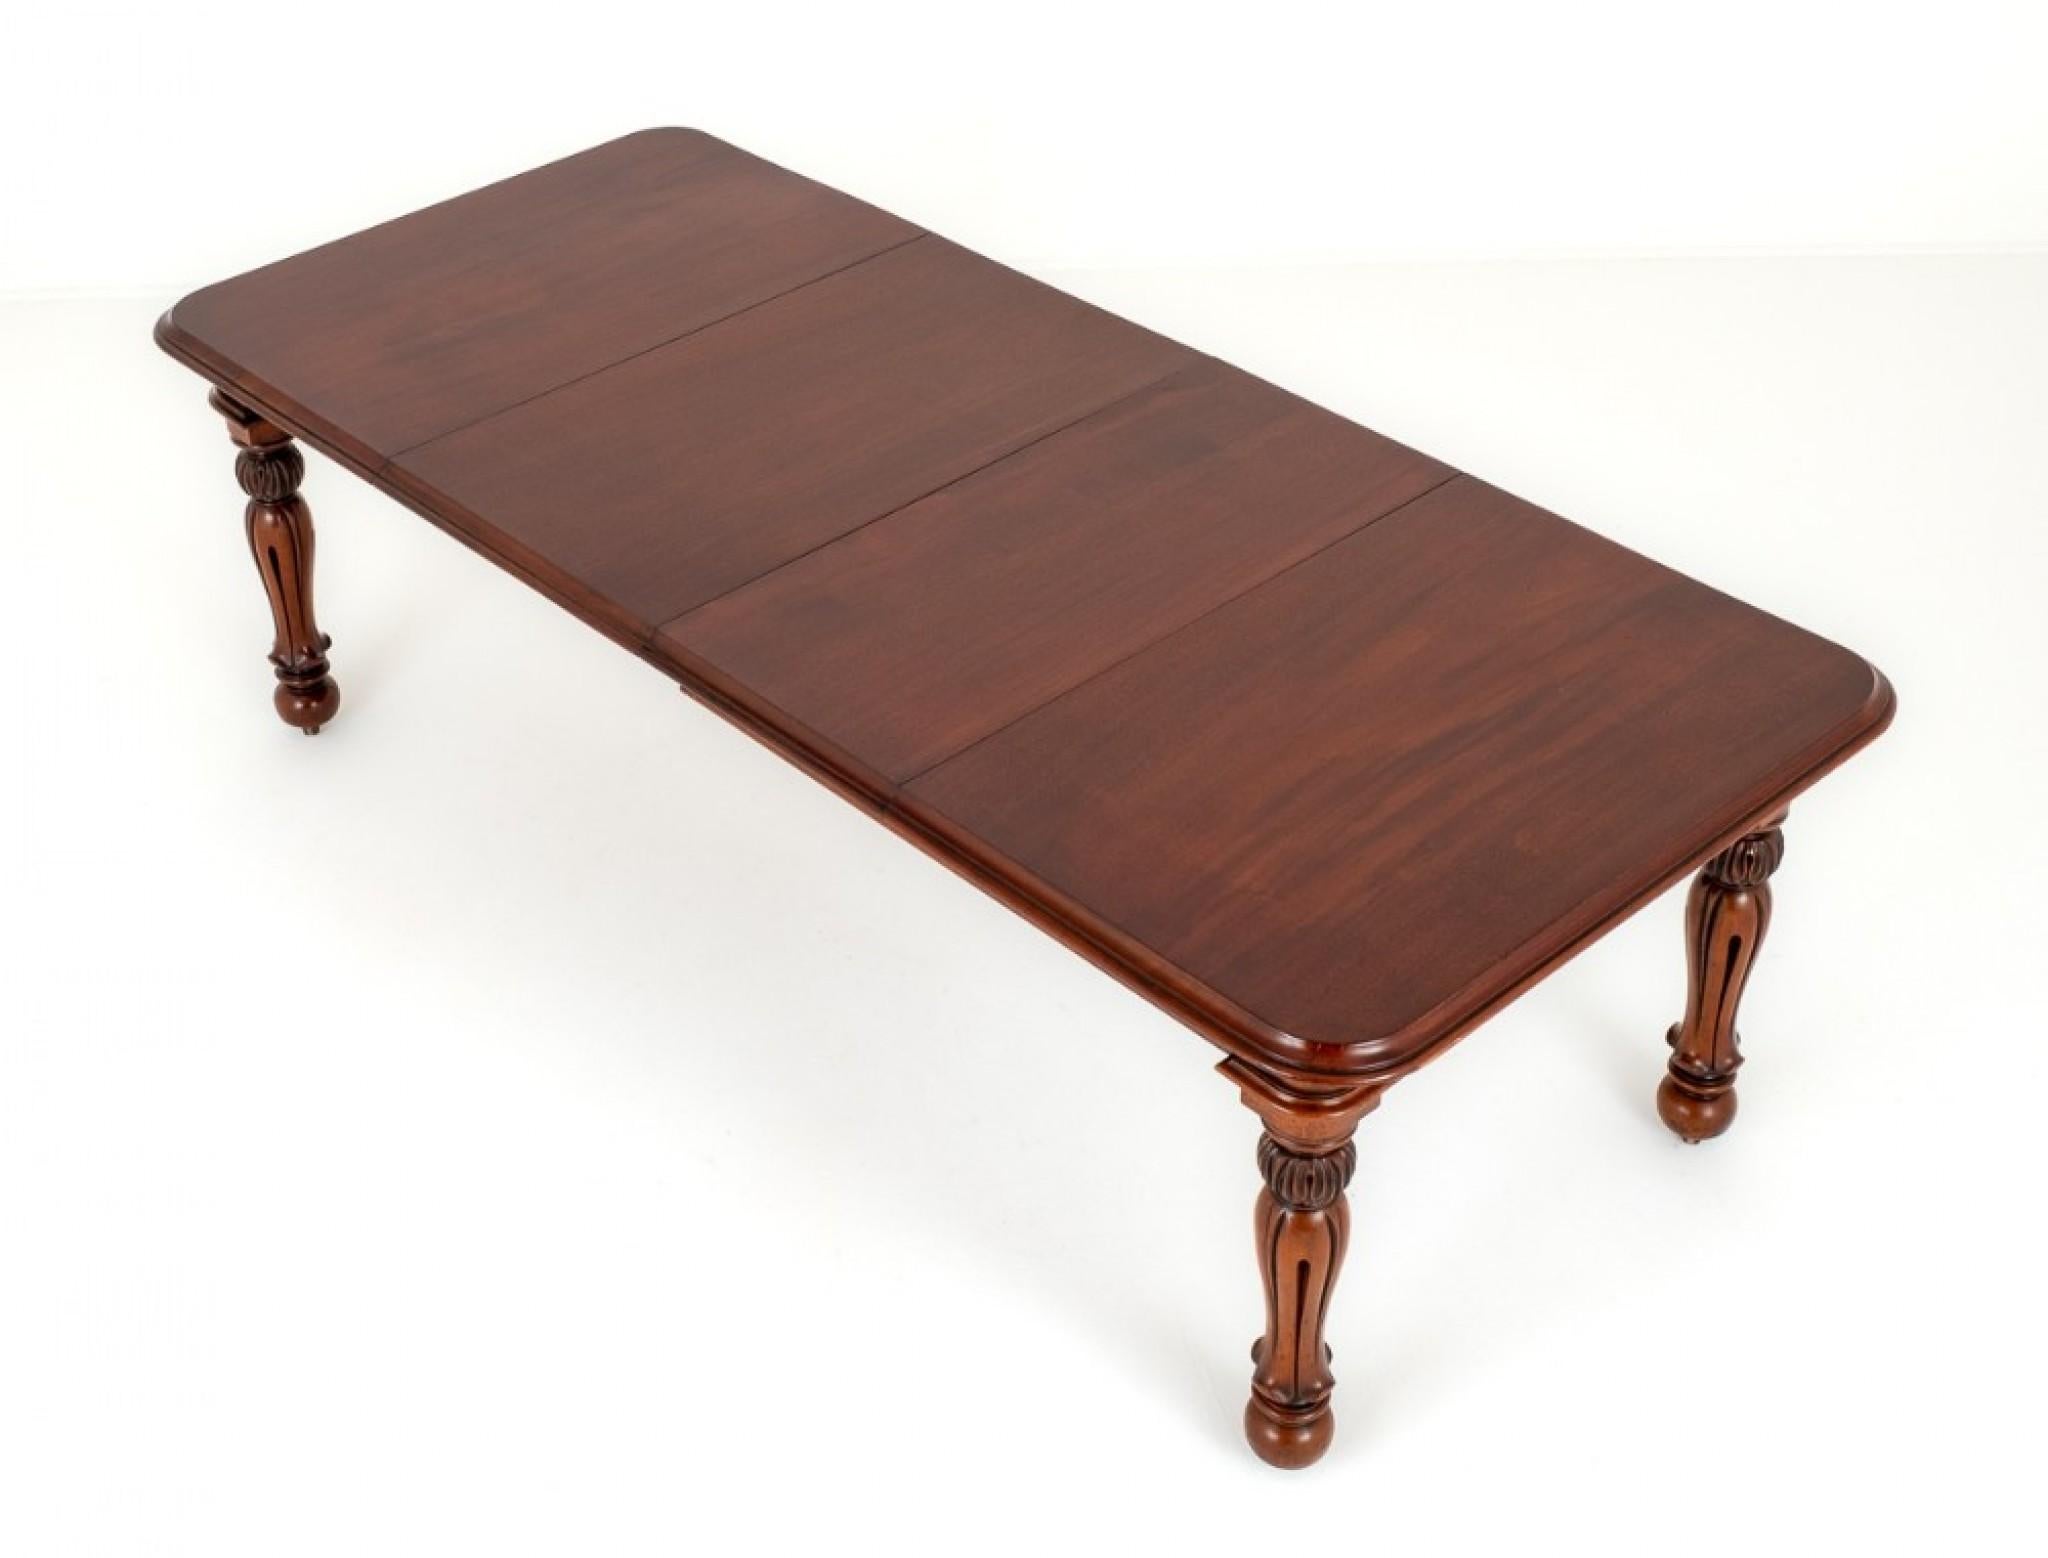 Table de salle à manger extensible à 2 feuilles en acajou du début de l'époque victorienne.
Une table de salle à manger extensible est un meuble polyvalent
conçus pour accueillir un nombre variable de personnes à l'heure des repas ou lors d'autres